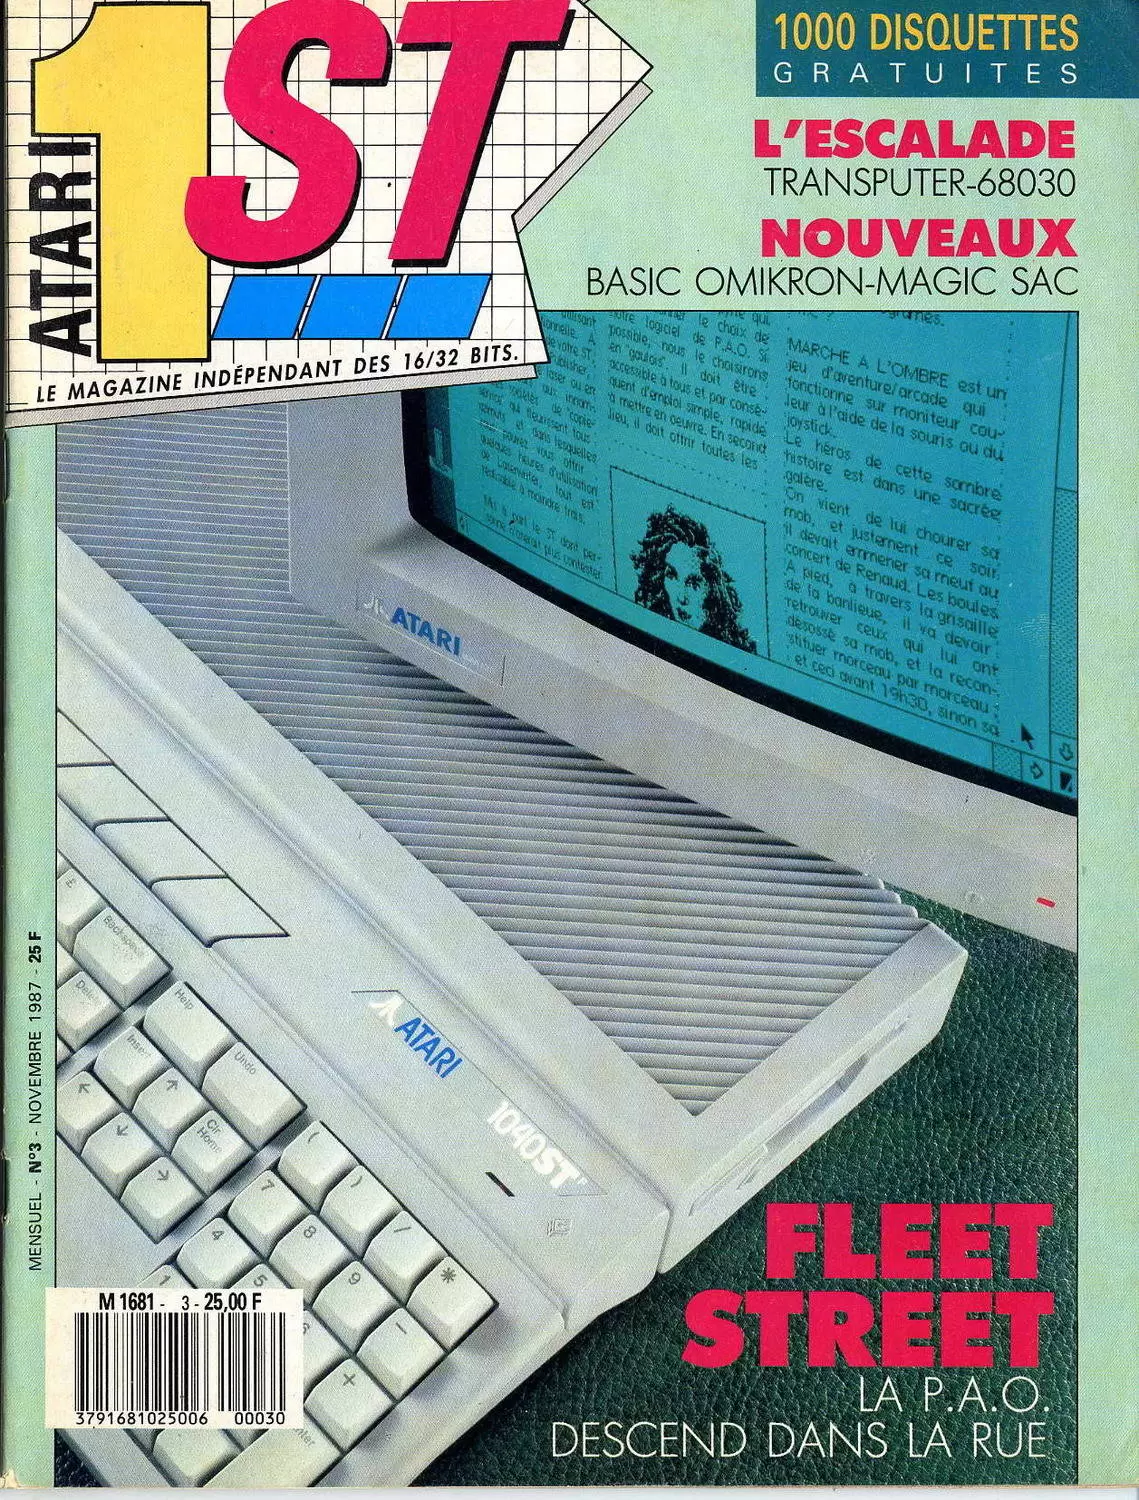 Atari 1ST - Atari 1ST n°3